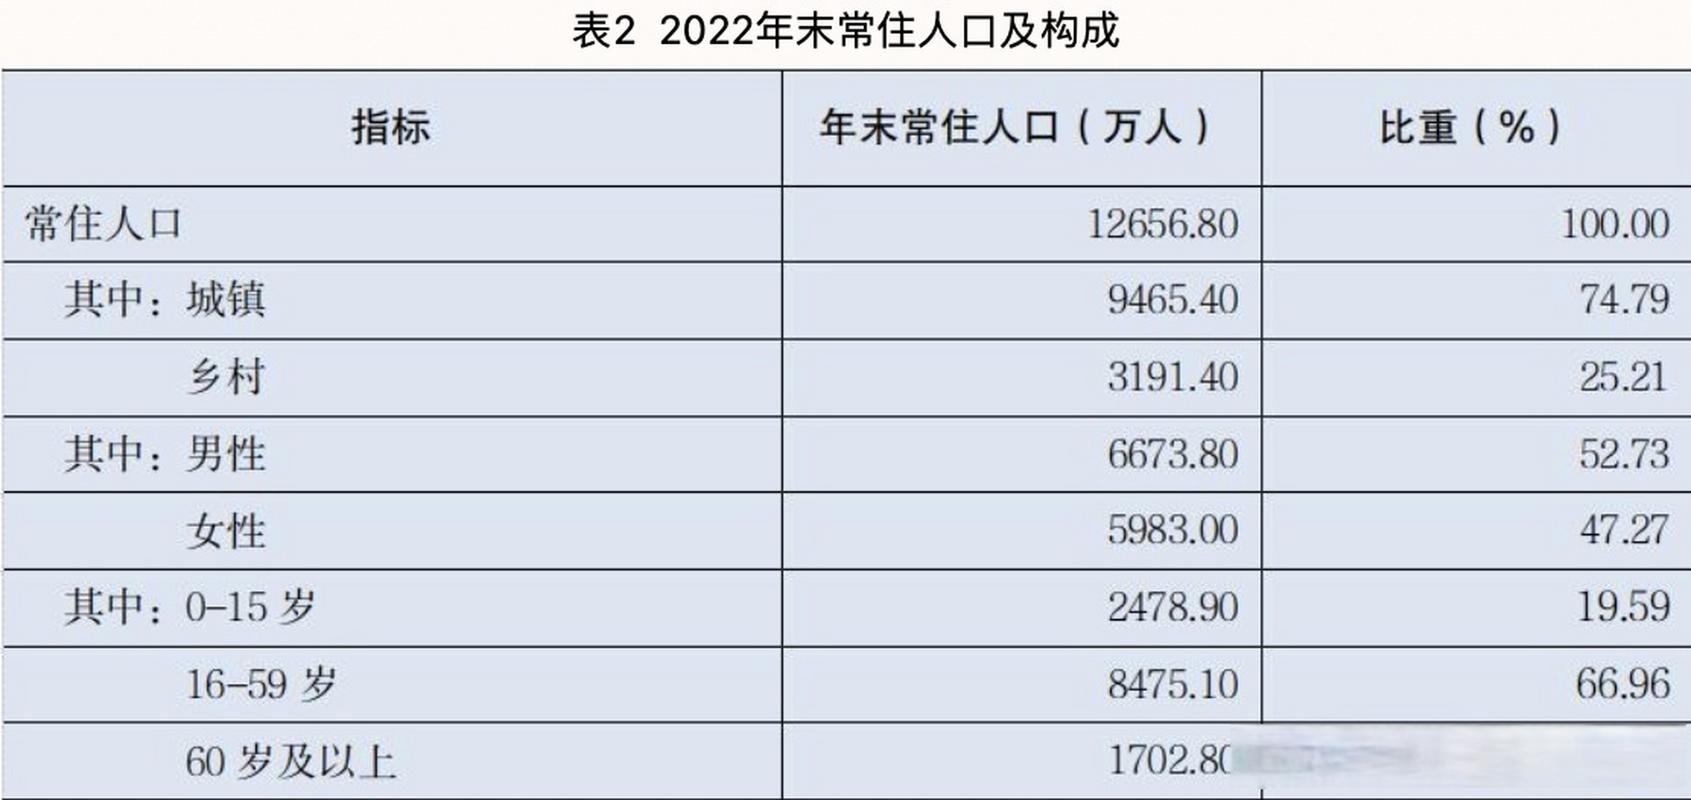 广东常住人口2022年总人数